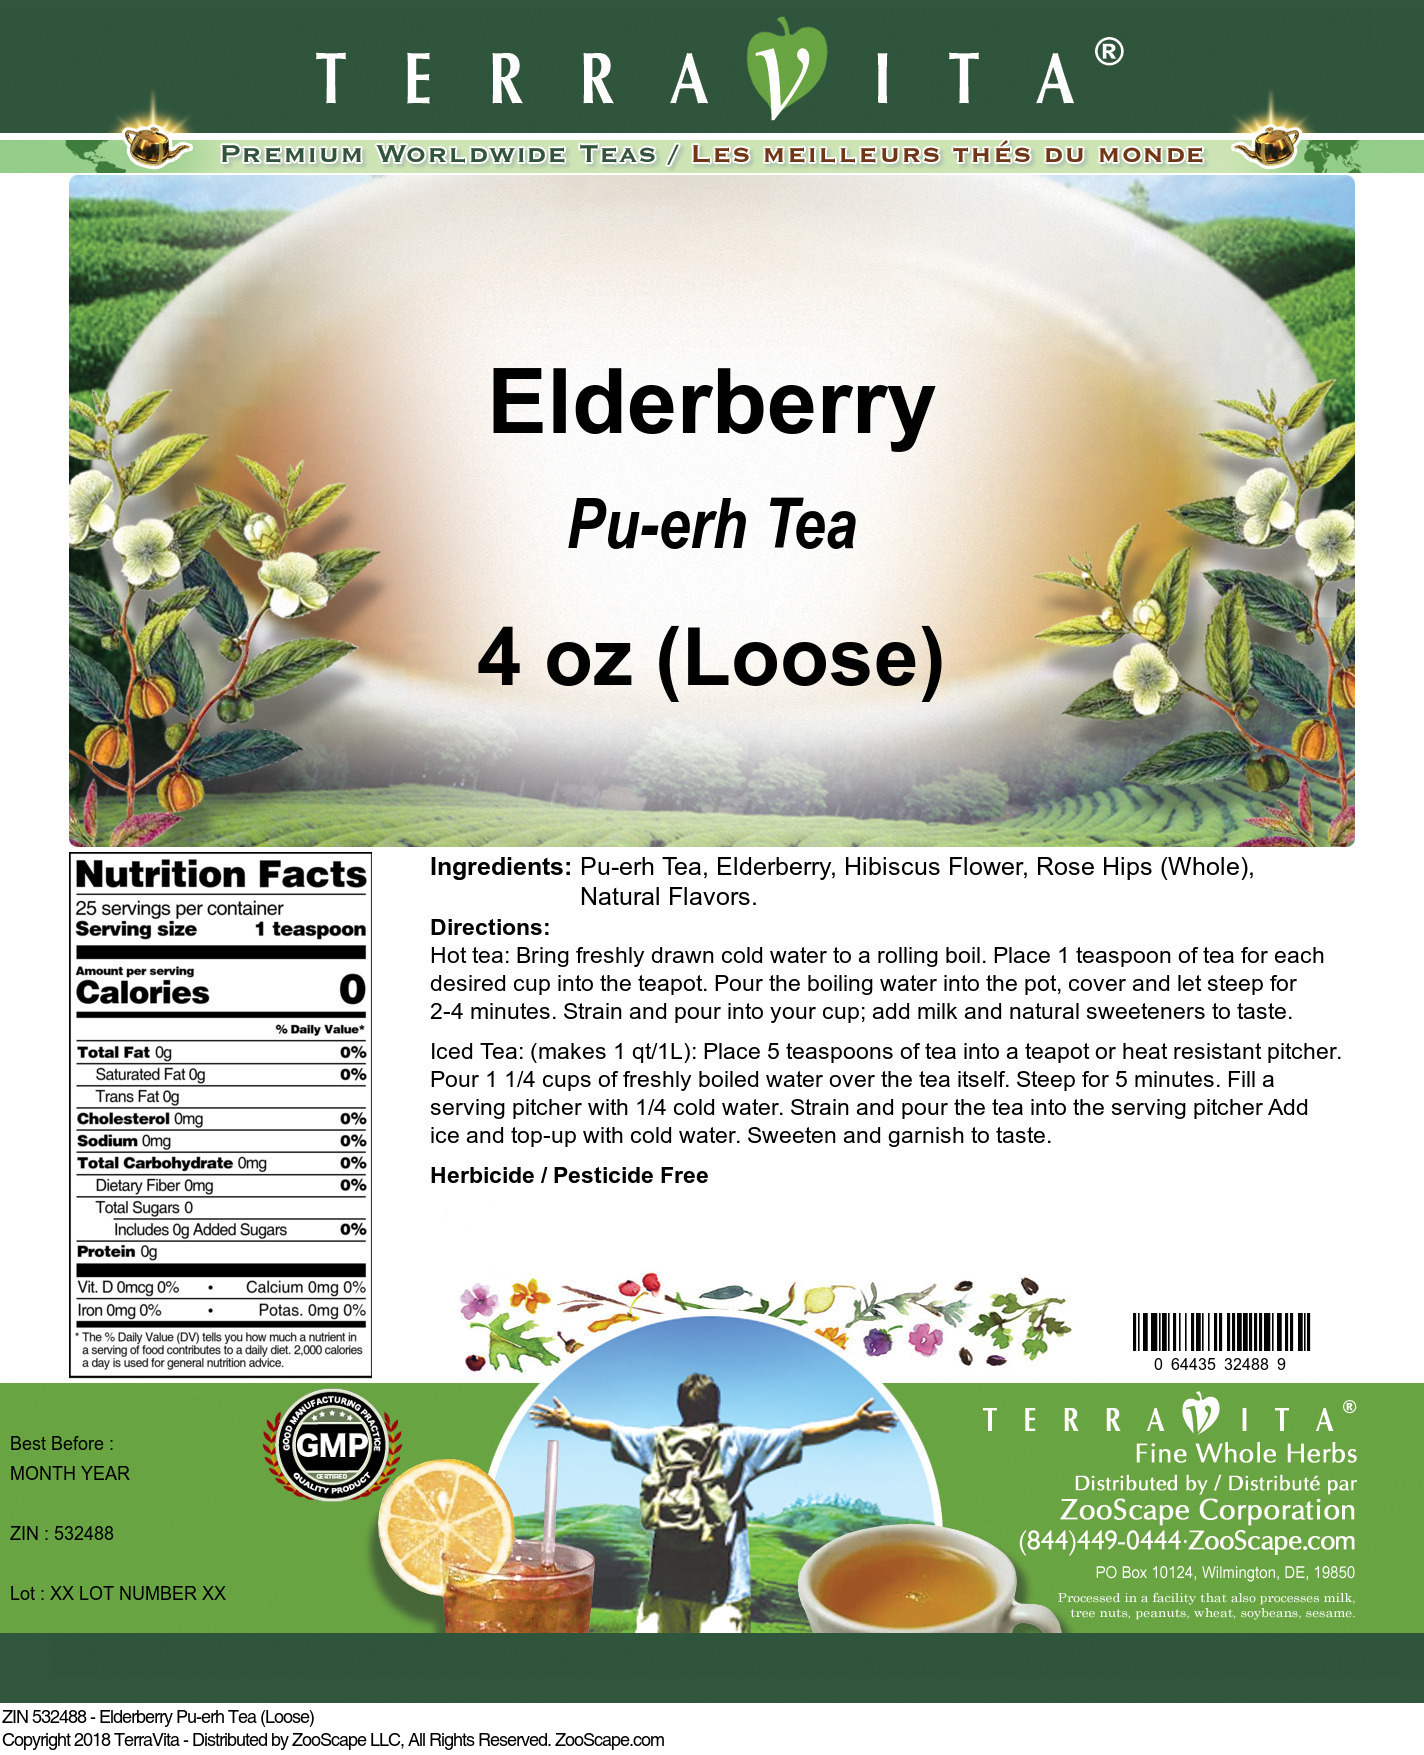 Elderberry Pu-erh Tea (Loose) - Label